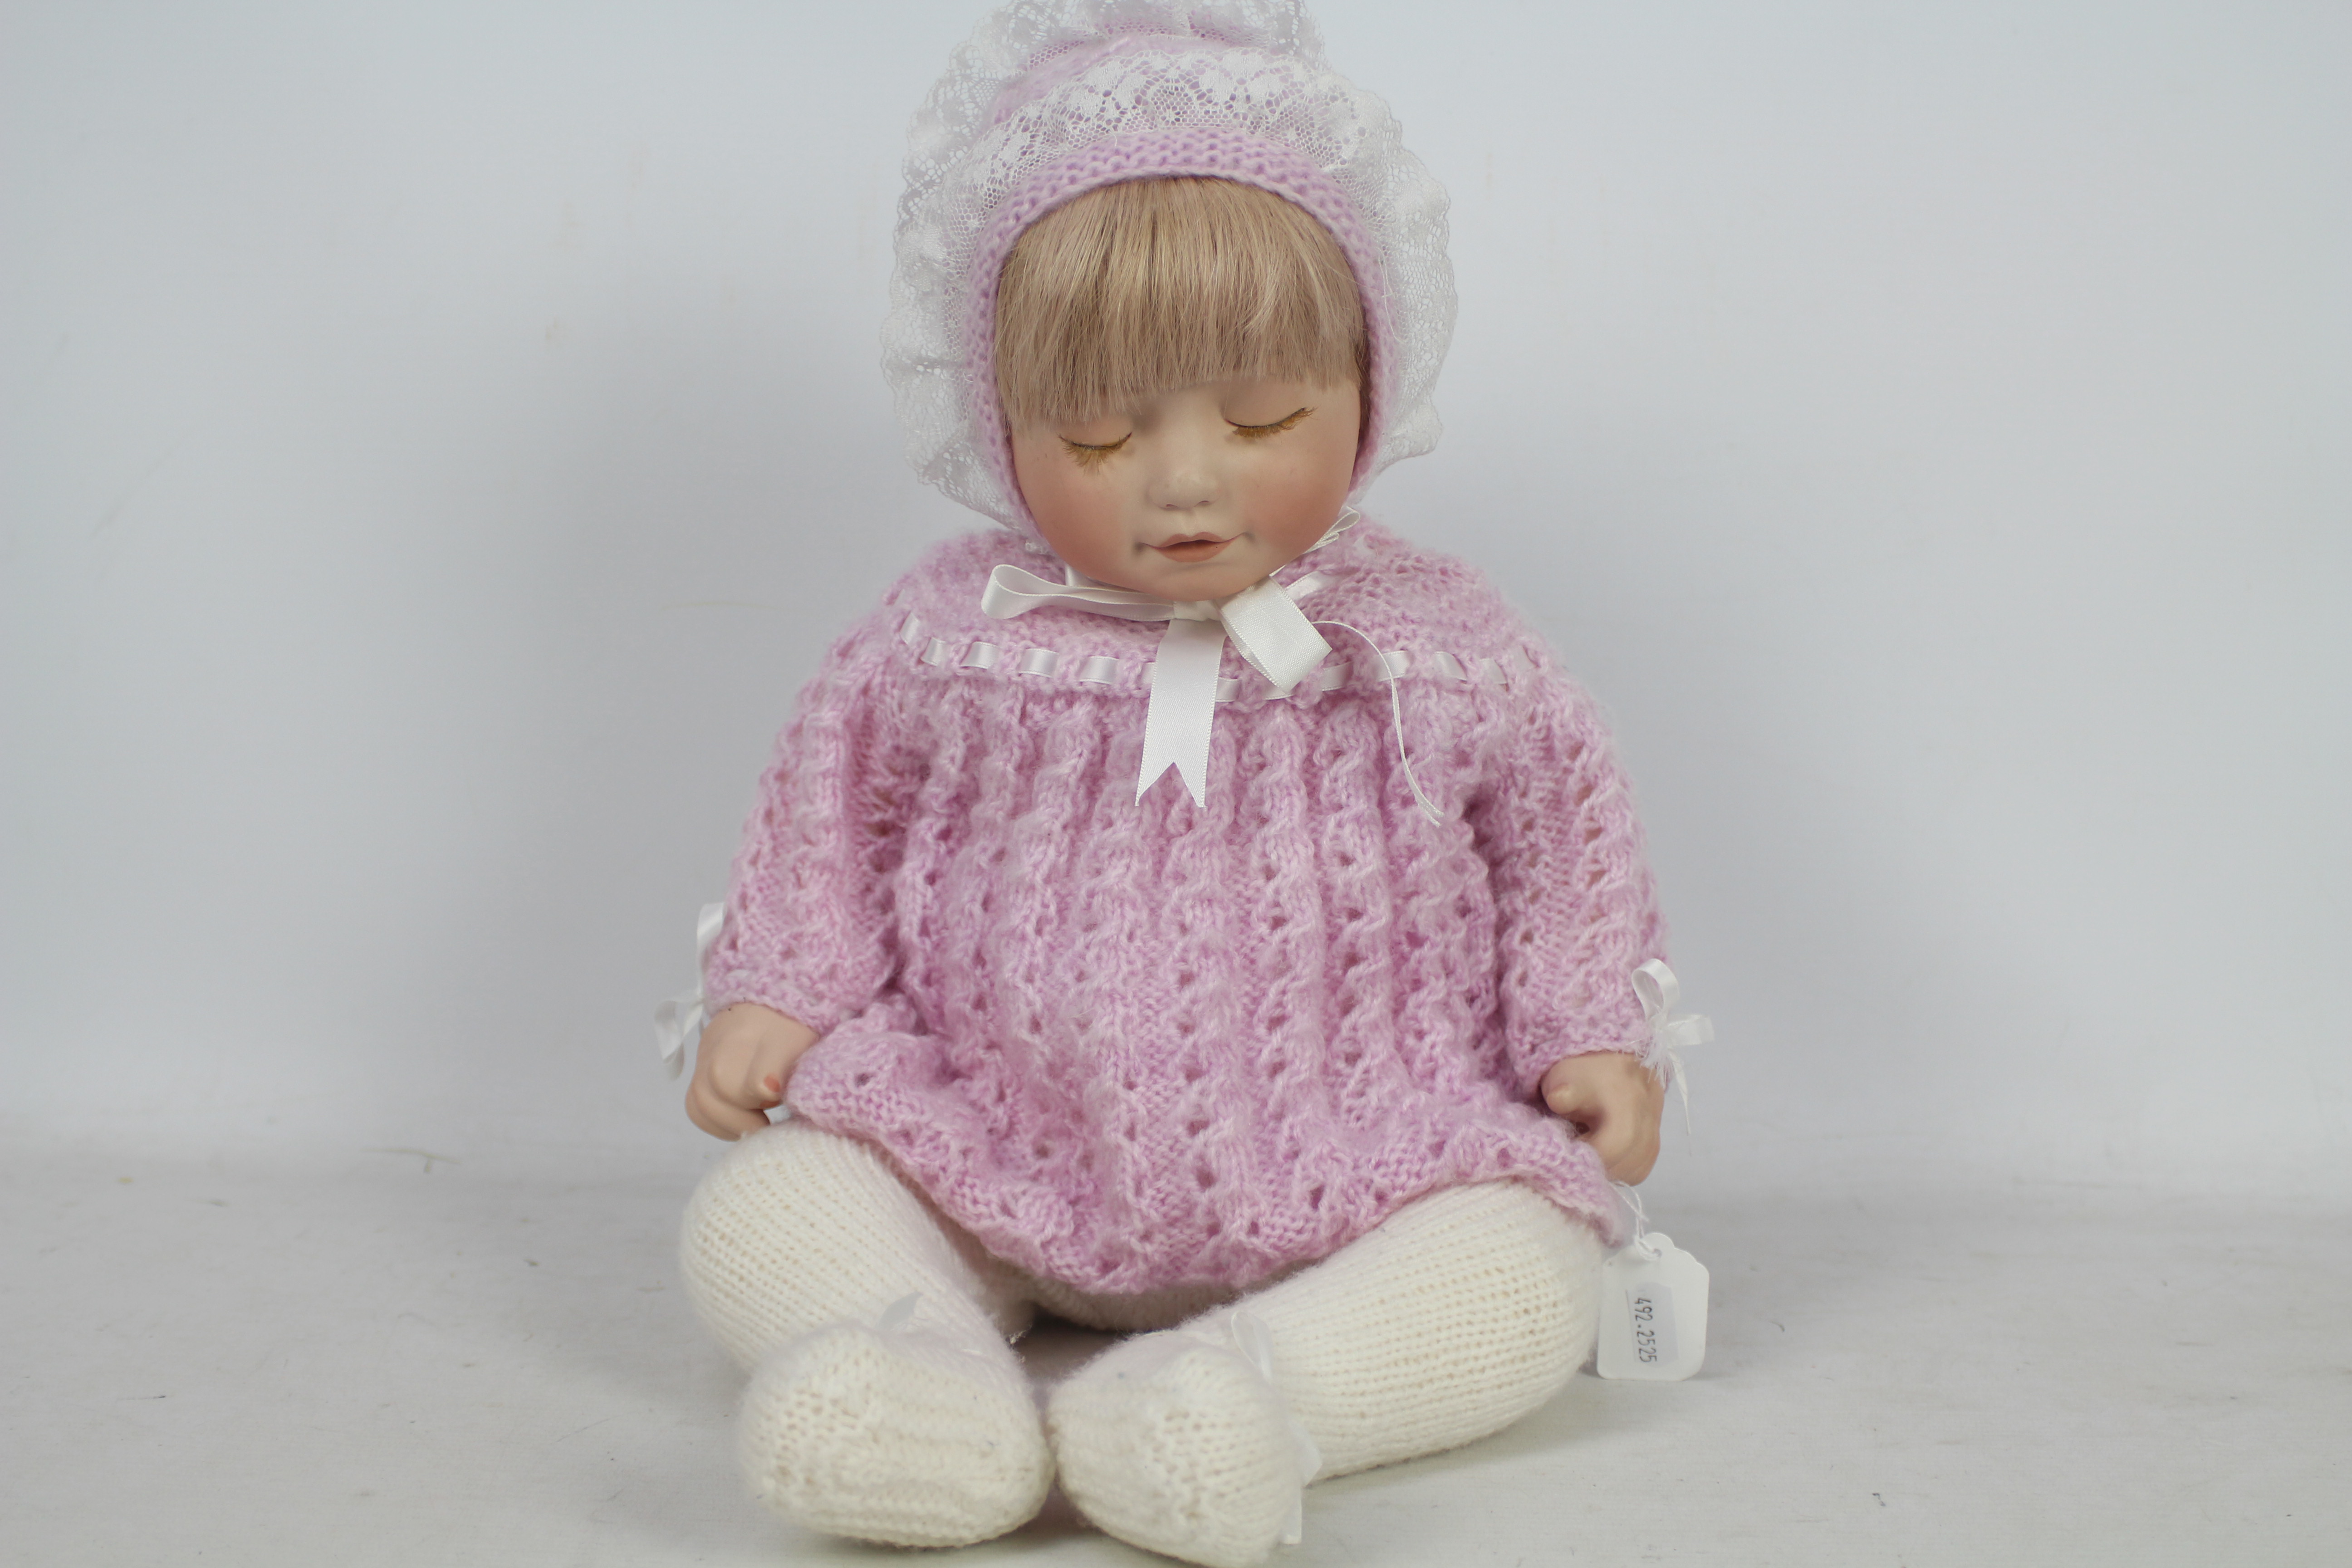 Byron - A Byron BCC104 weighted baby doll 'Sleeping Angel'.